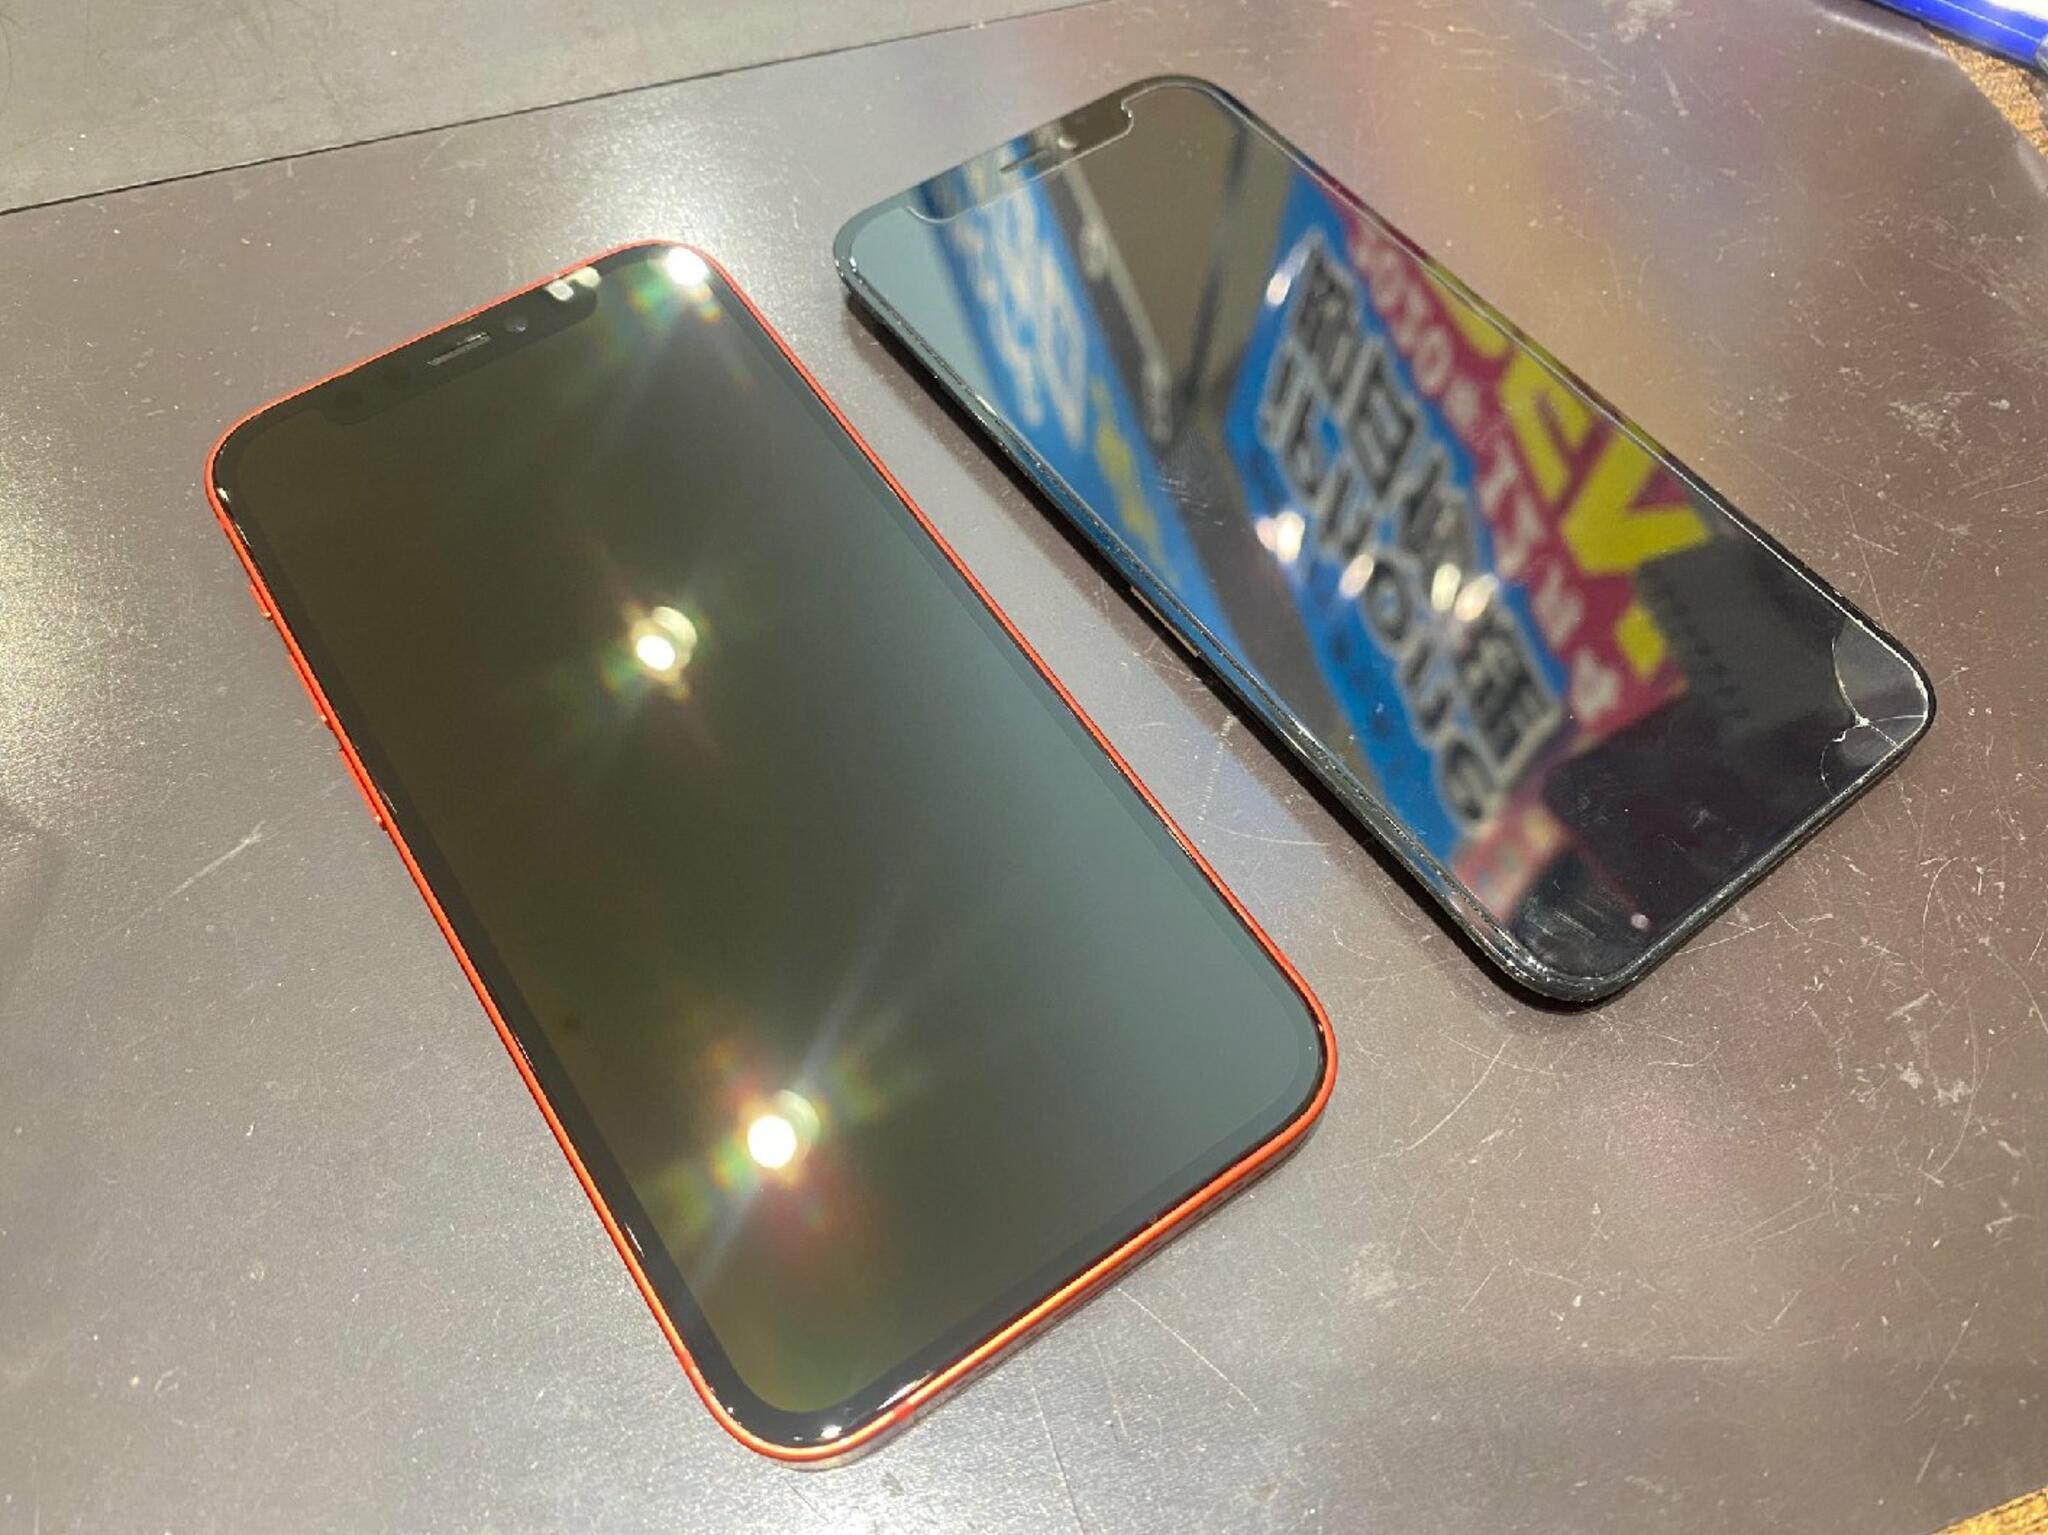 iPhone・iPad・Switch修理店 スマートクール イオンモール広島祇園店からのお知らせ(梅雨は水没に注意☔️)に関する写真